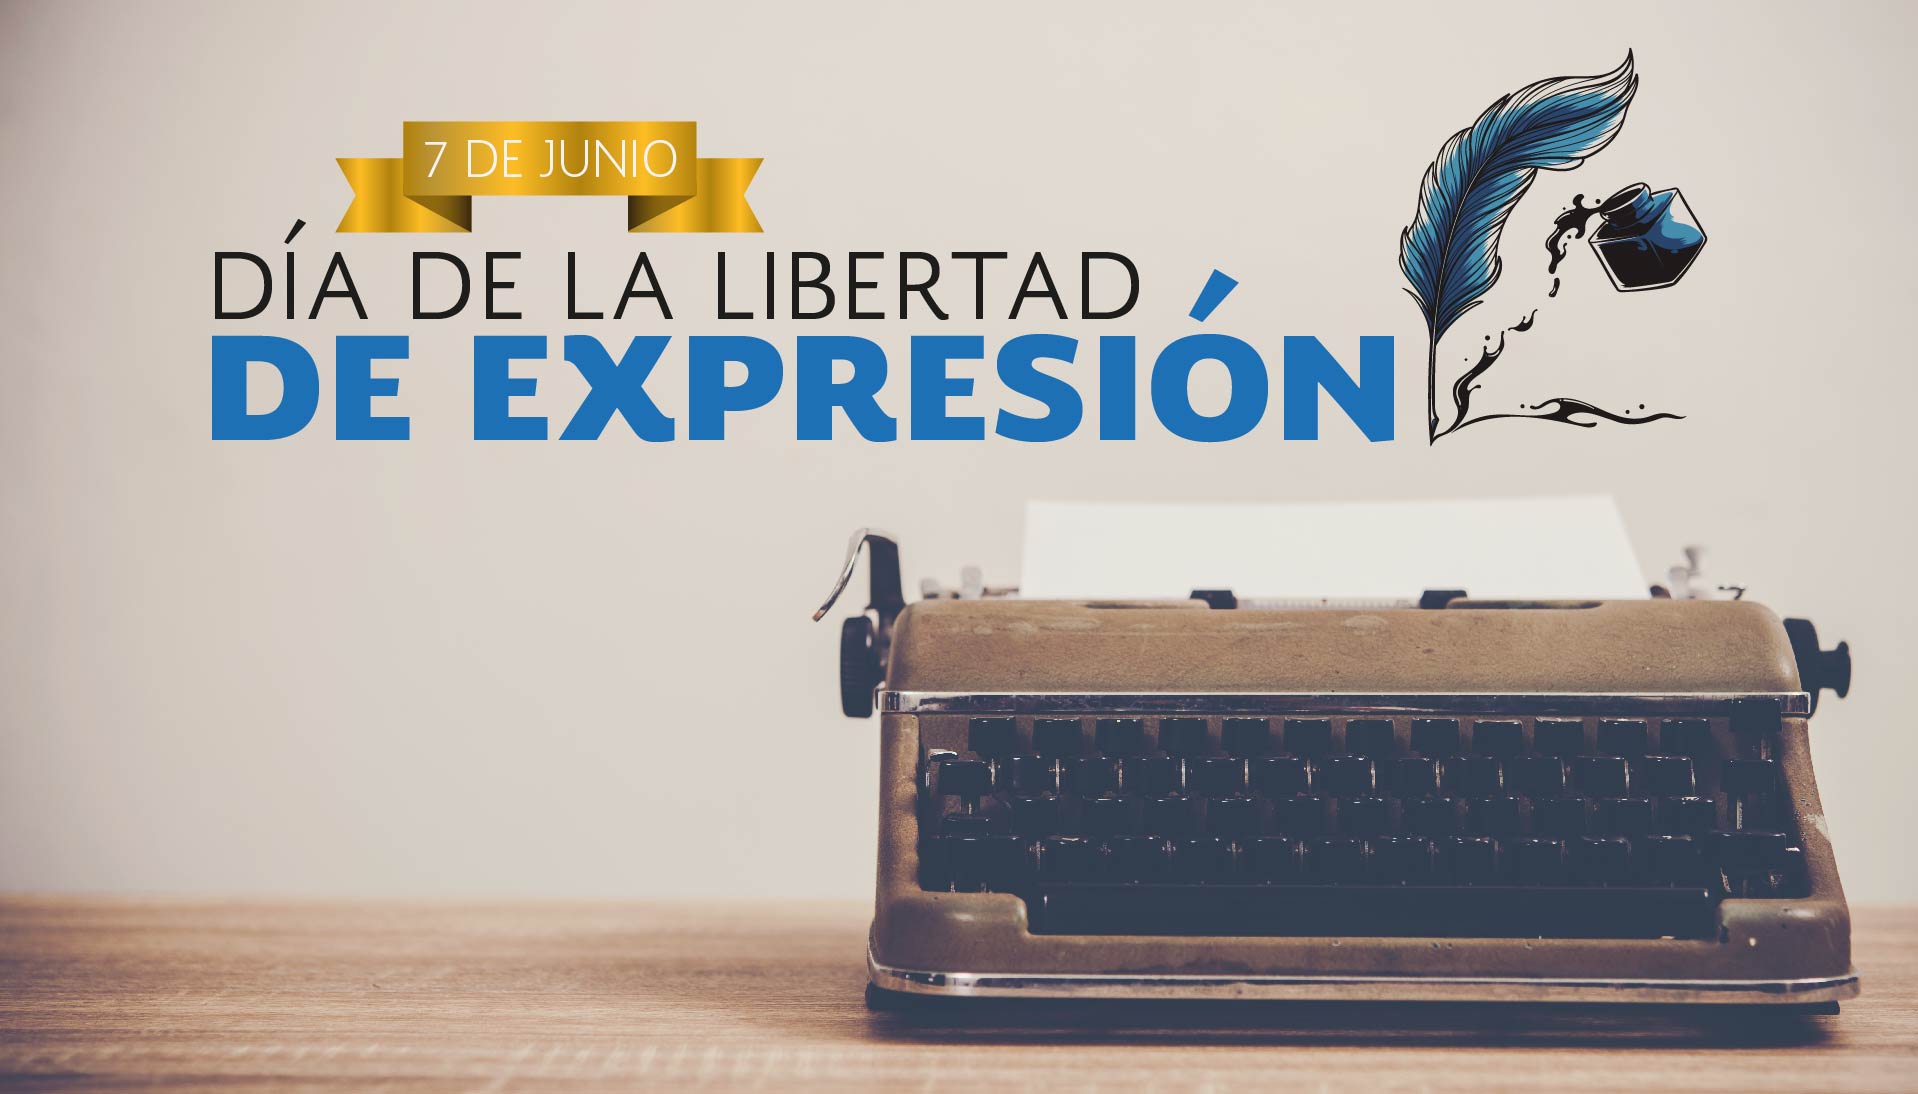 7 de junio día de la Libertad de expresión